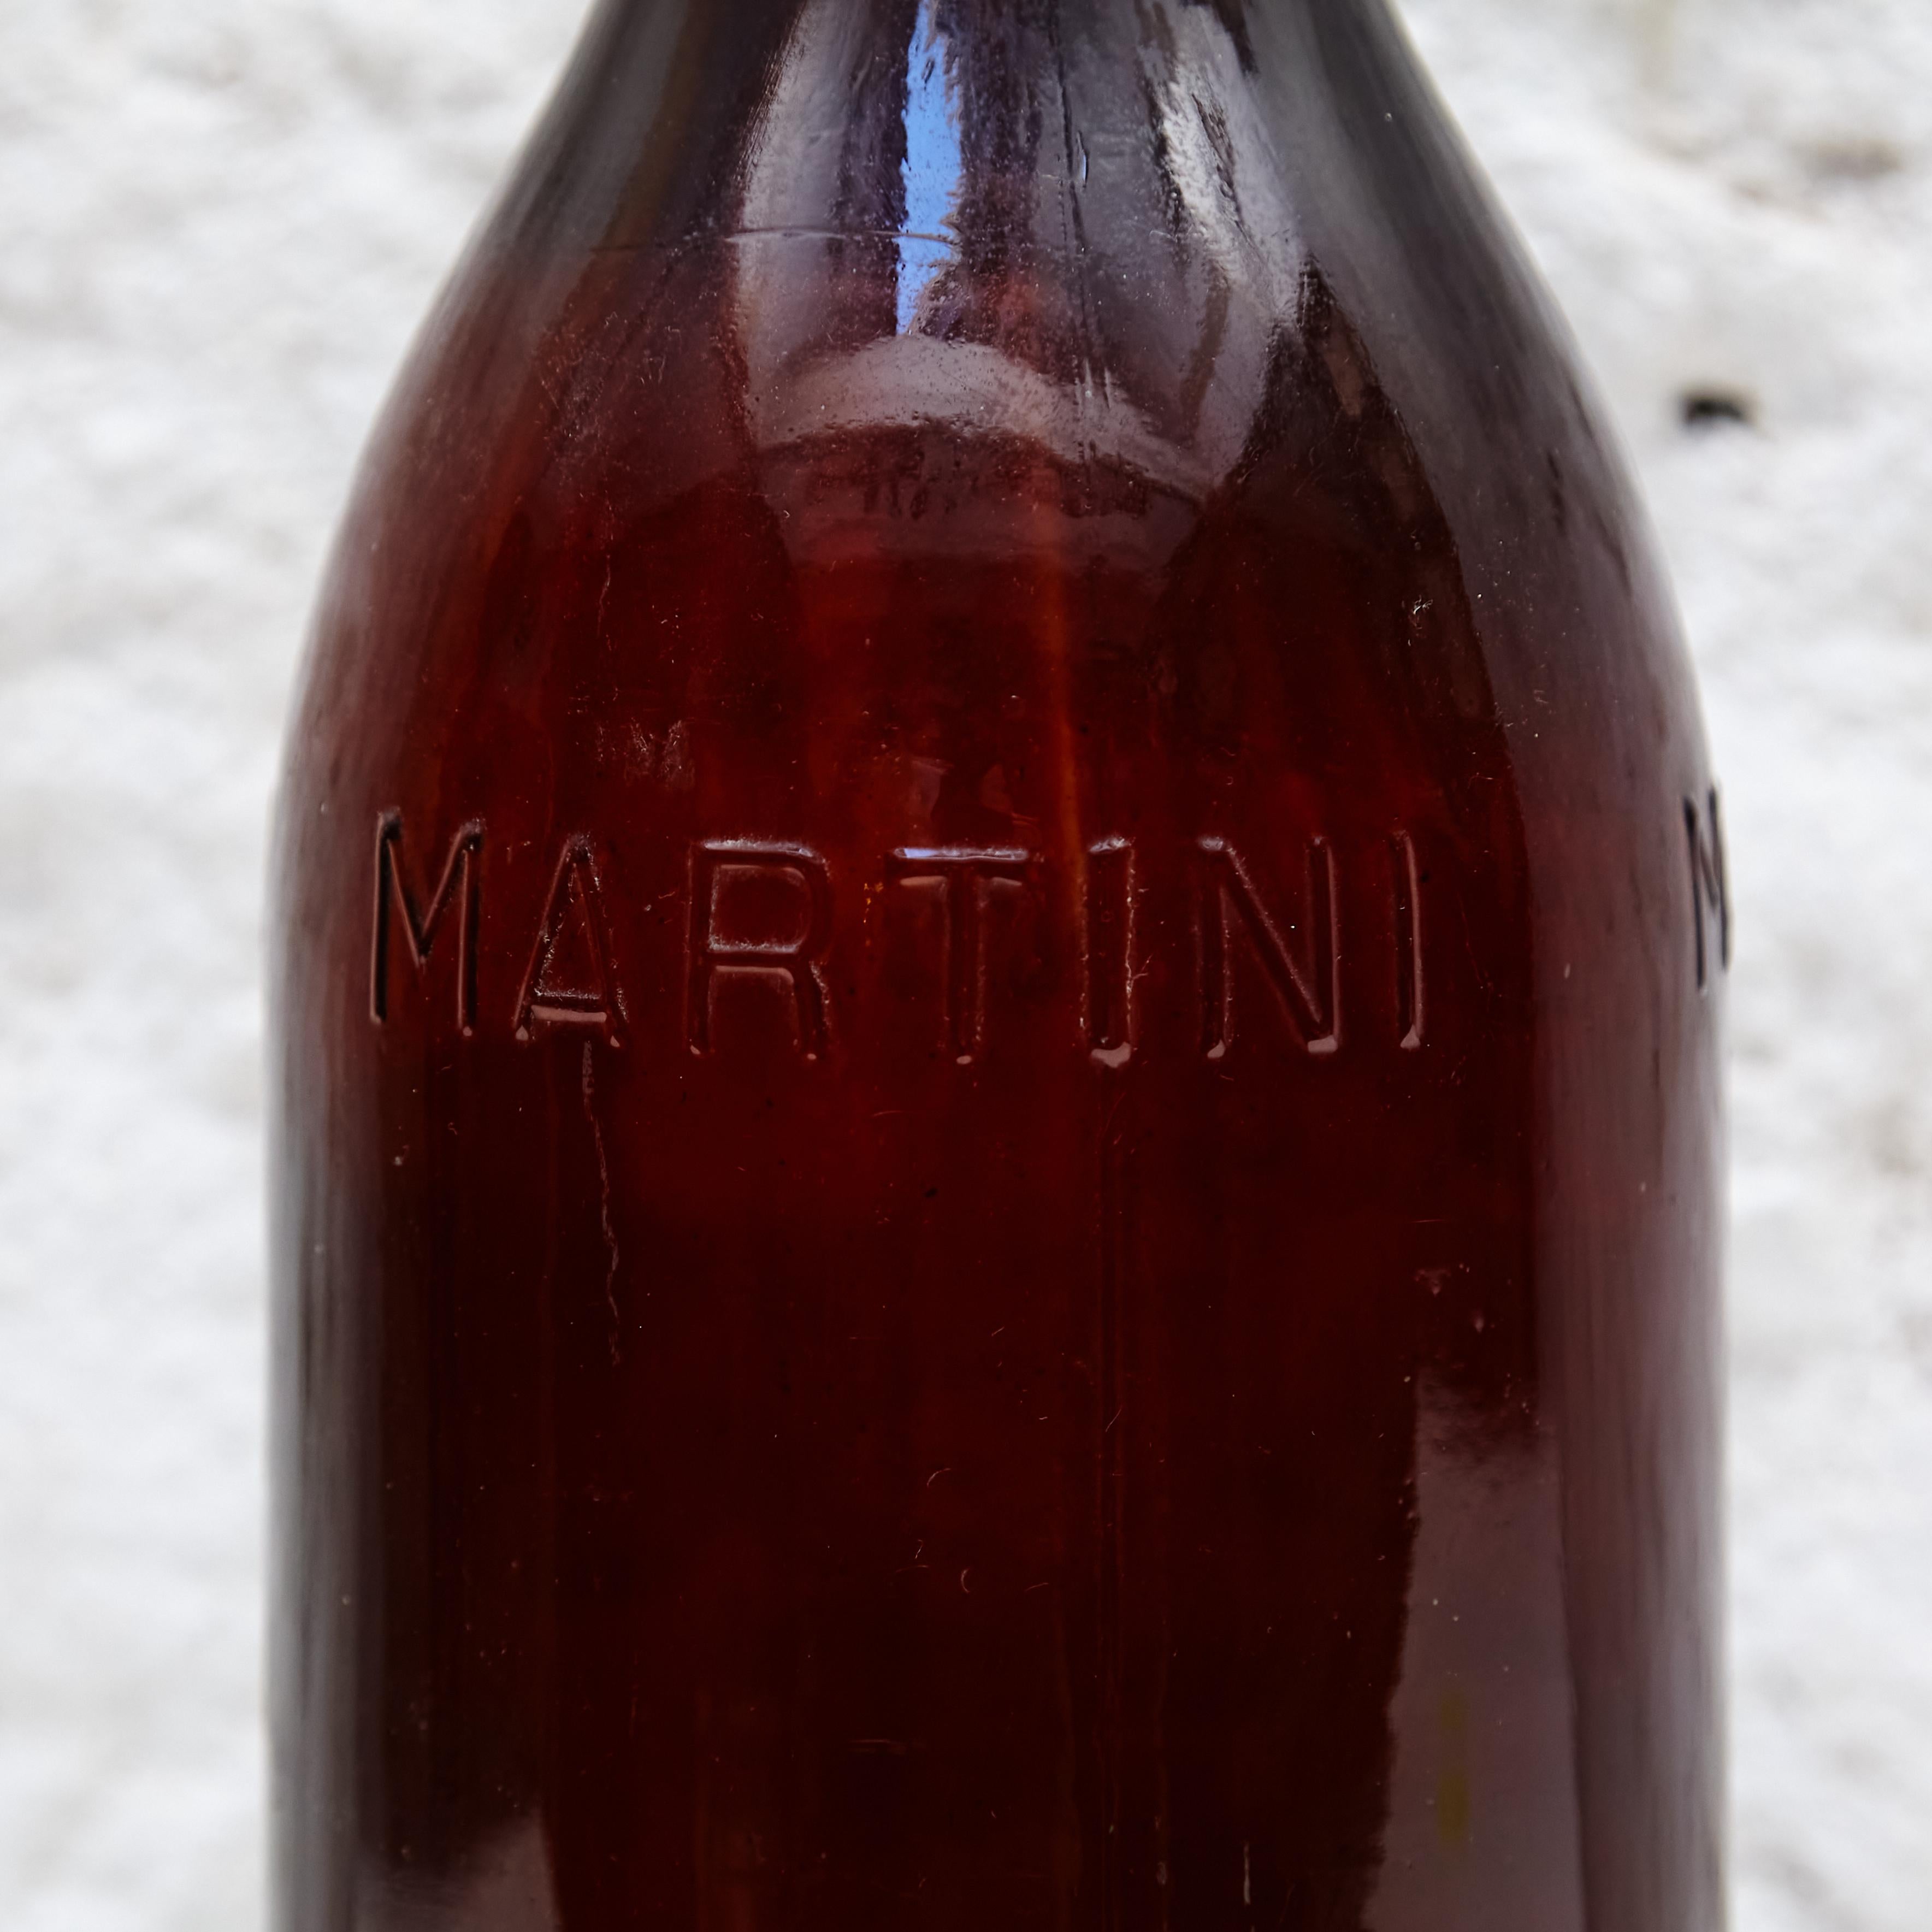 Big Martini Glasflasche für französische Werbung.

Hergestellt in Frankreich, um 1940.

In gutem Originalzustand, mit im Einklang mit Alter und Nutzung, die Erhaltung einer schönen Patina mit einigen Kratzern.

Abmessungen: 
Durchm. 15 cm x H 54